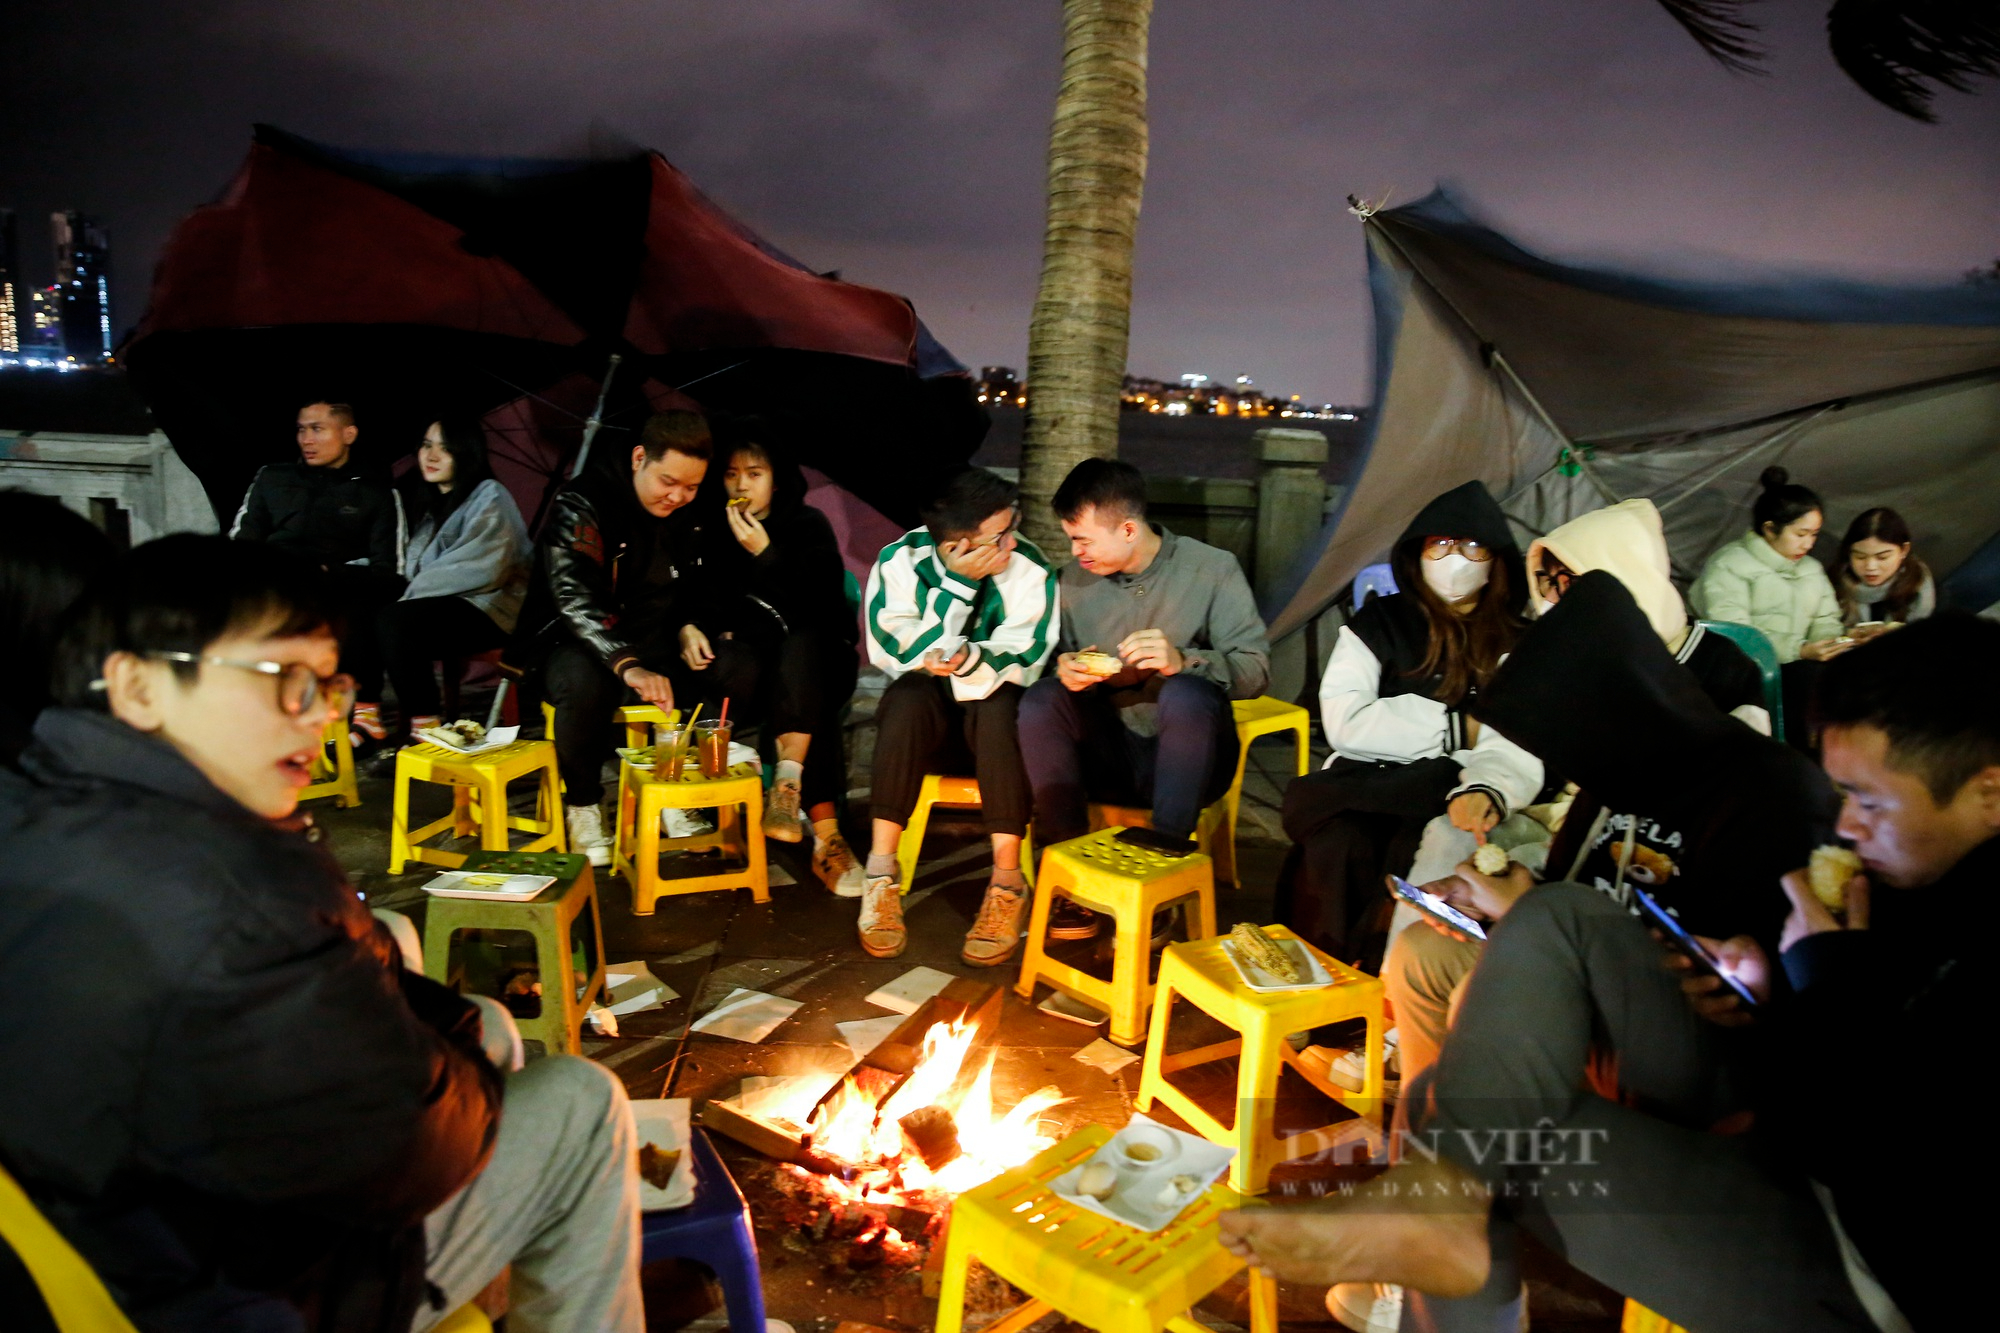 Giới trẻ Hà Nội đổ xô ra hồ Tây sưởi ấm, ăn ngô nướng giữa đêm đông lạnh giá - Ảnh 6.